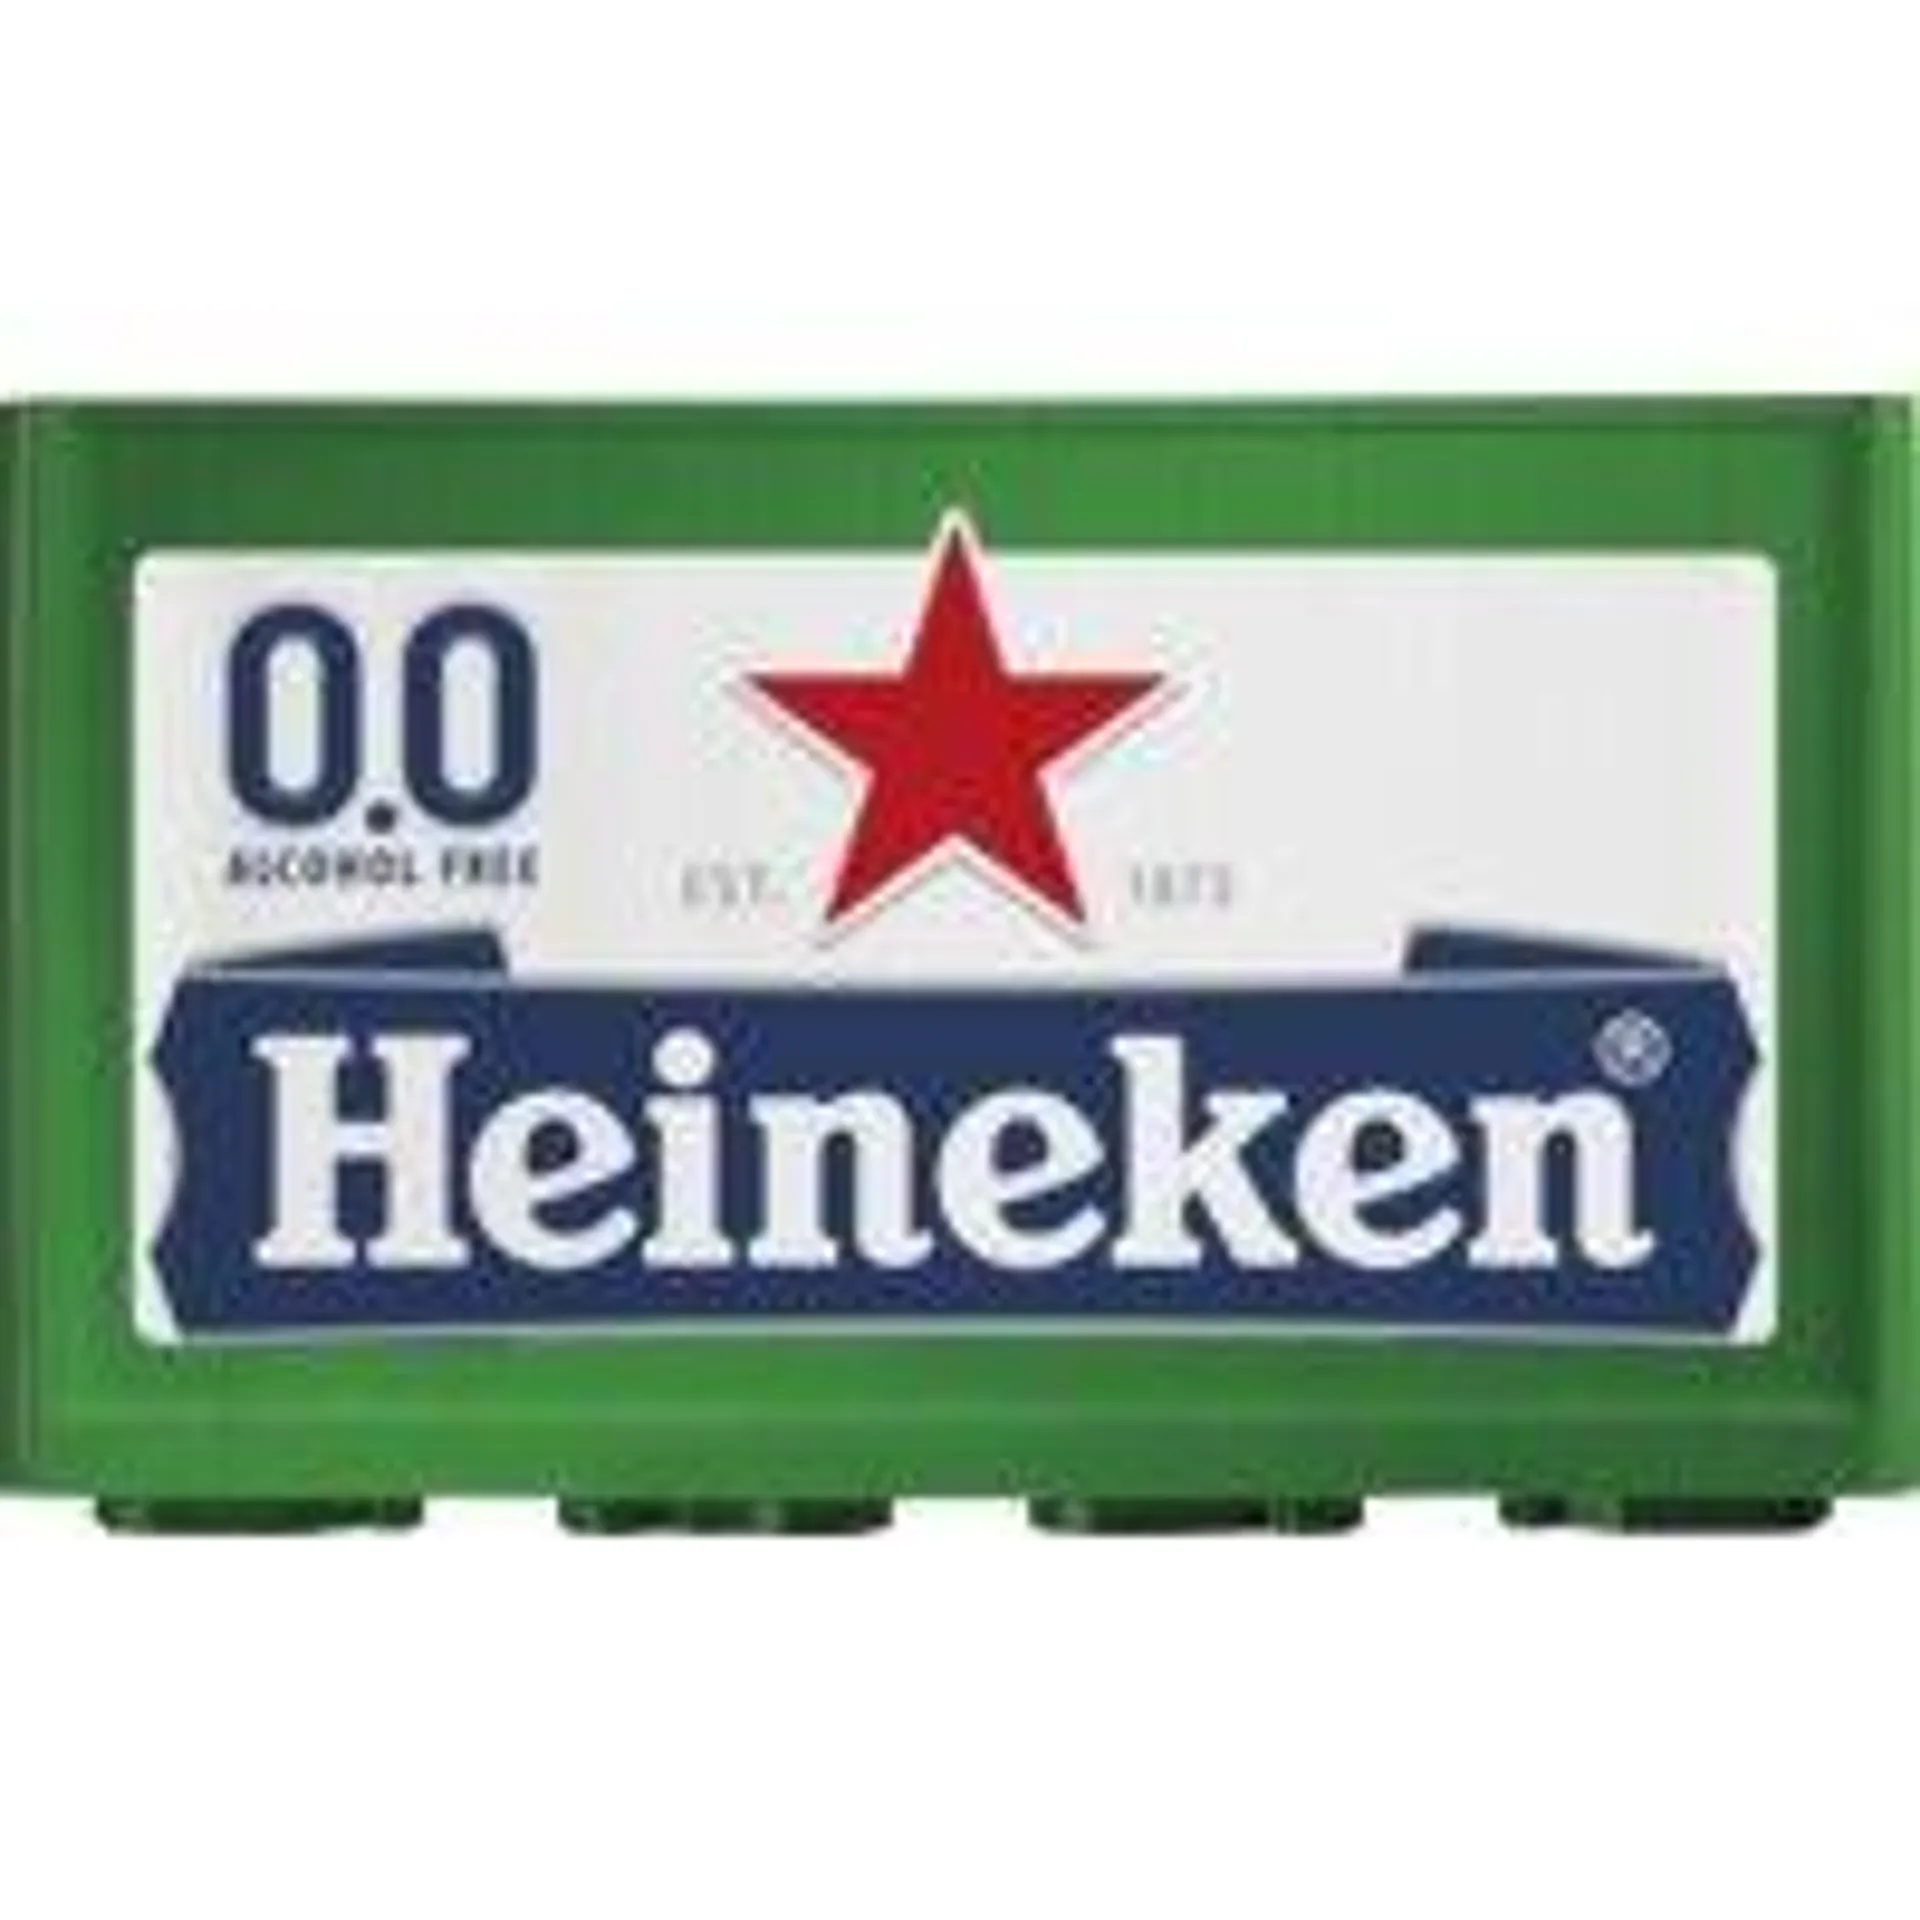 Heineken Premium pilsener 0.0 krat